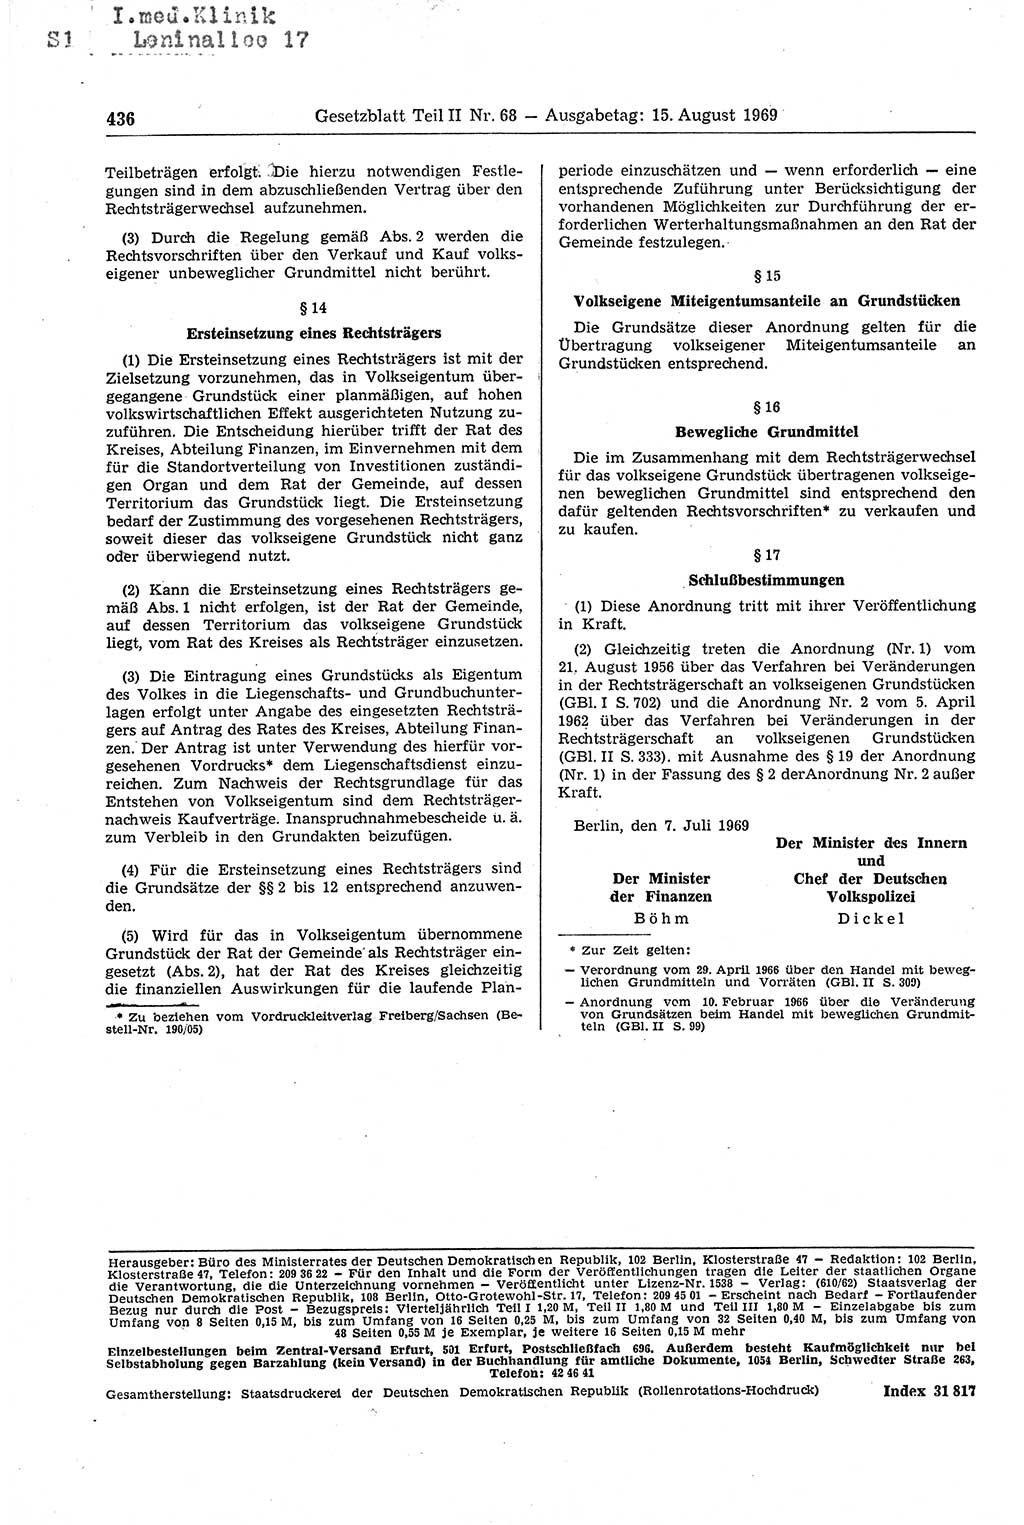 Gesetzblatt (GBl.) der Deutschen Demokratischen Republik (DDR) Teil ⅠⅠ 1969, Seite 436 (GBl. DDR ⅠⅠ 1969, S. 436)